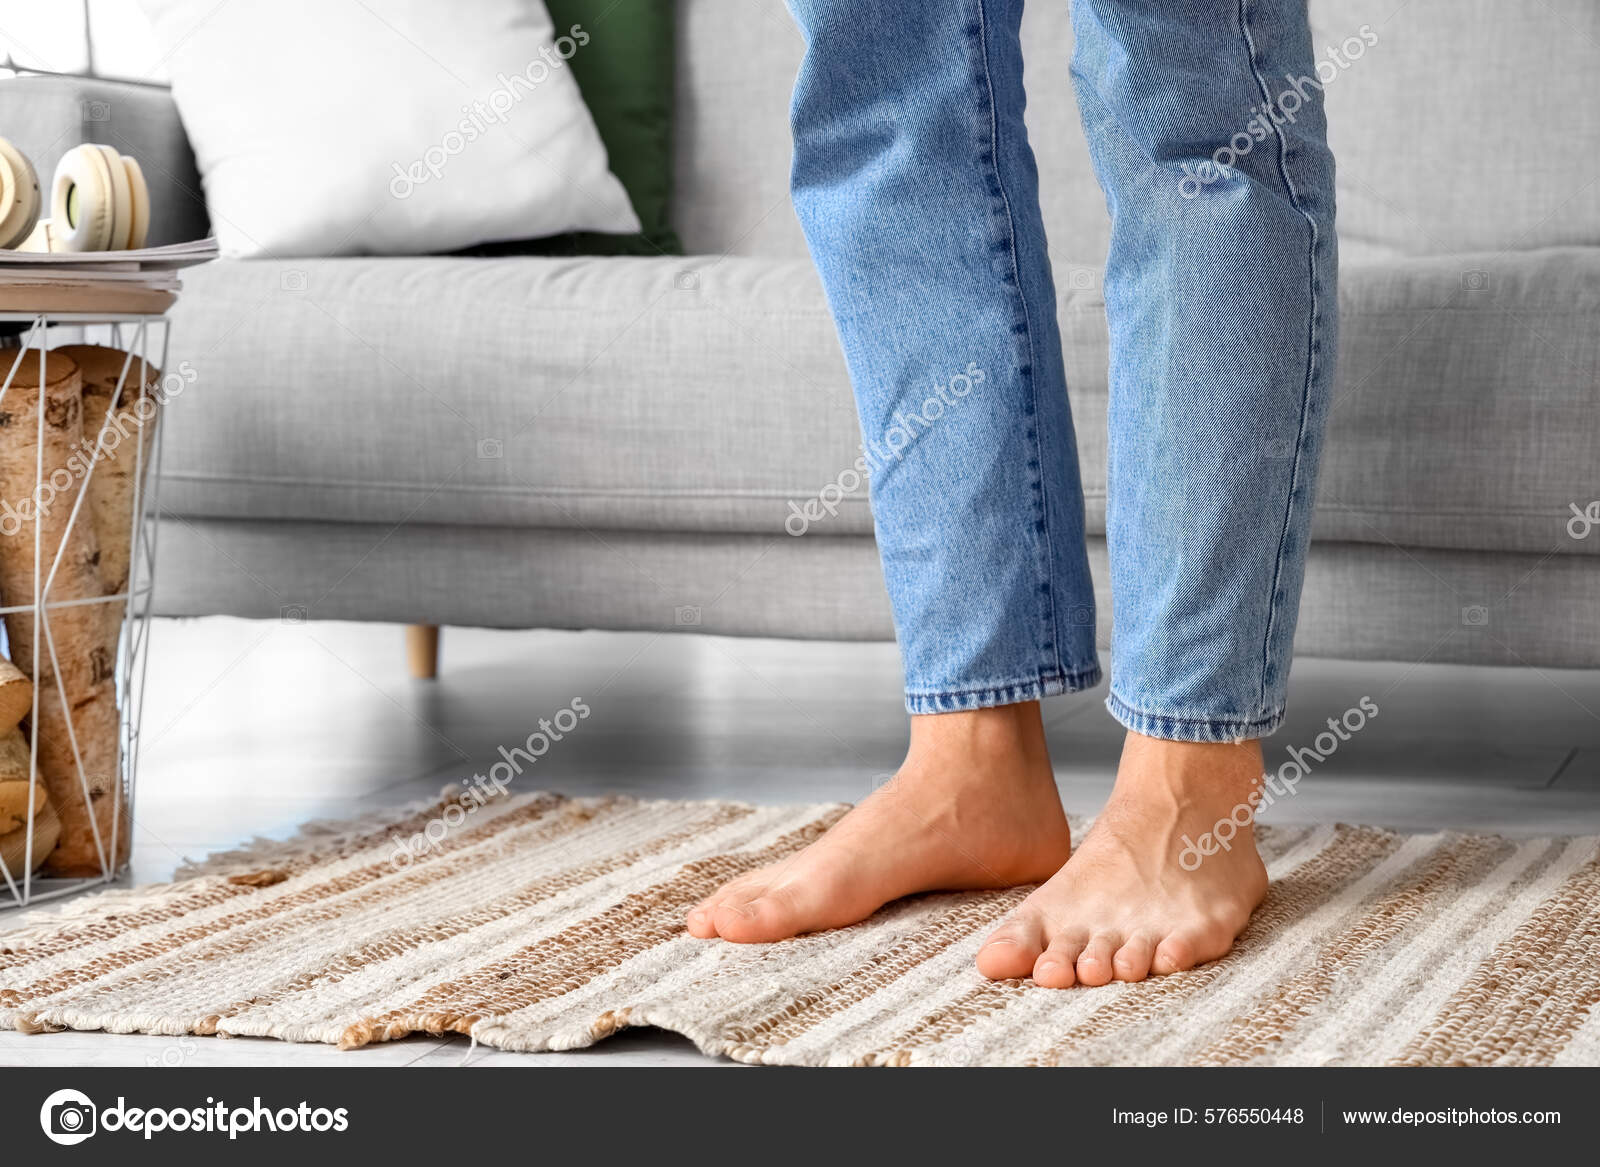 https://st.depositphotos.com/10614052/57655/i/1600/depositphotos_576550448-stock-photo-young-barefoot-man-home-closeup.jpg